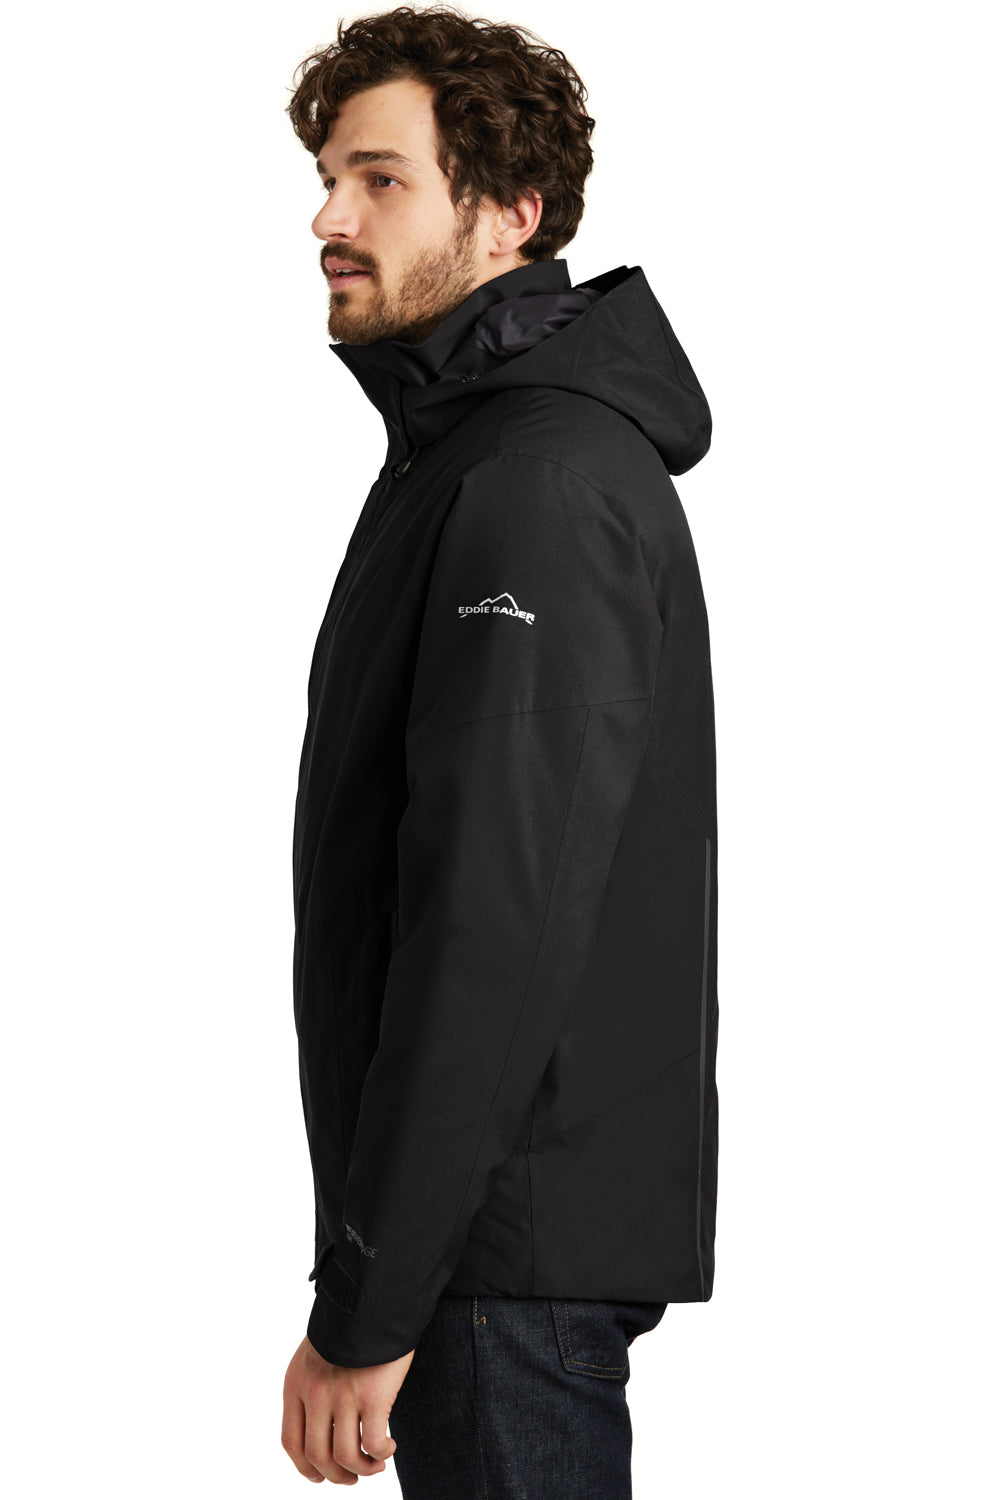 Eddie Bauer EB554 Mens WeatherEdge Plus Waterproof Full Zip Hooded Jacket Black Model Side